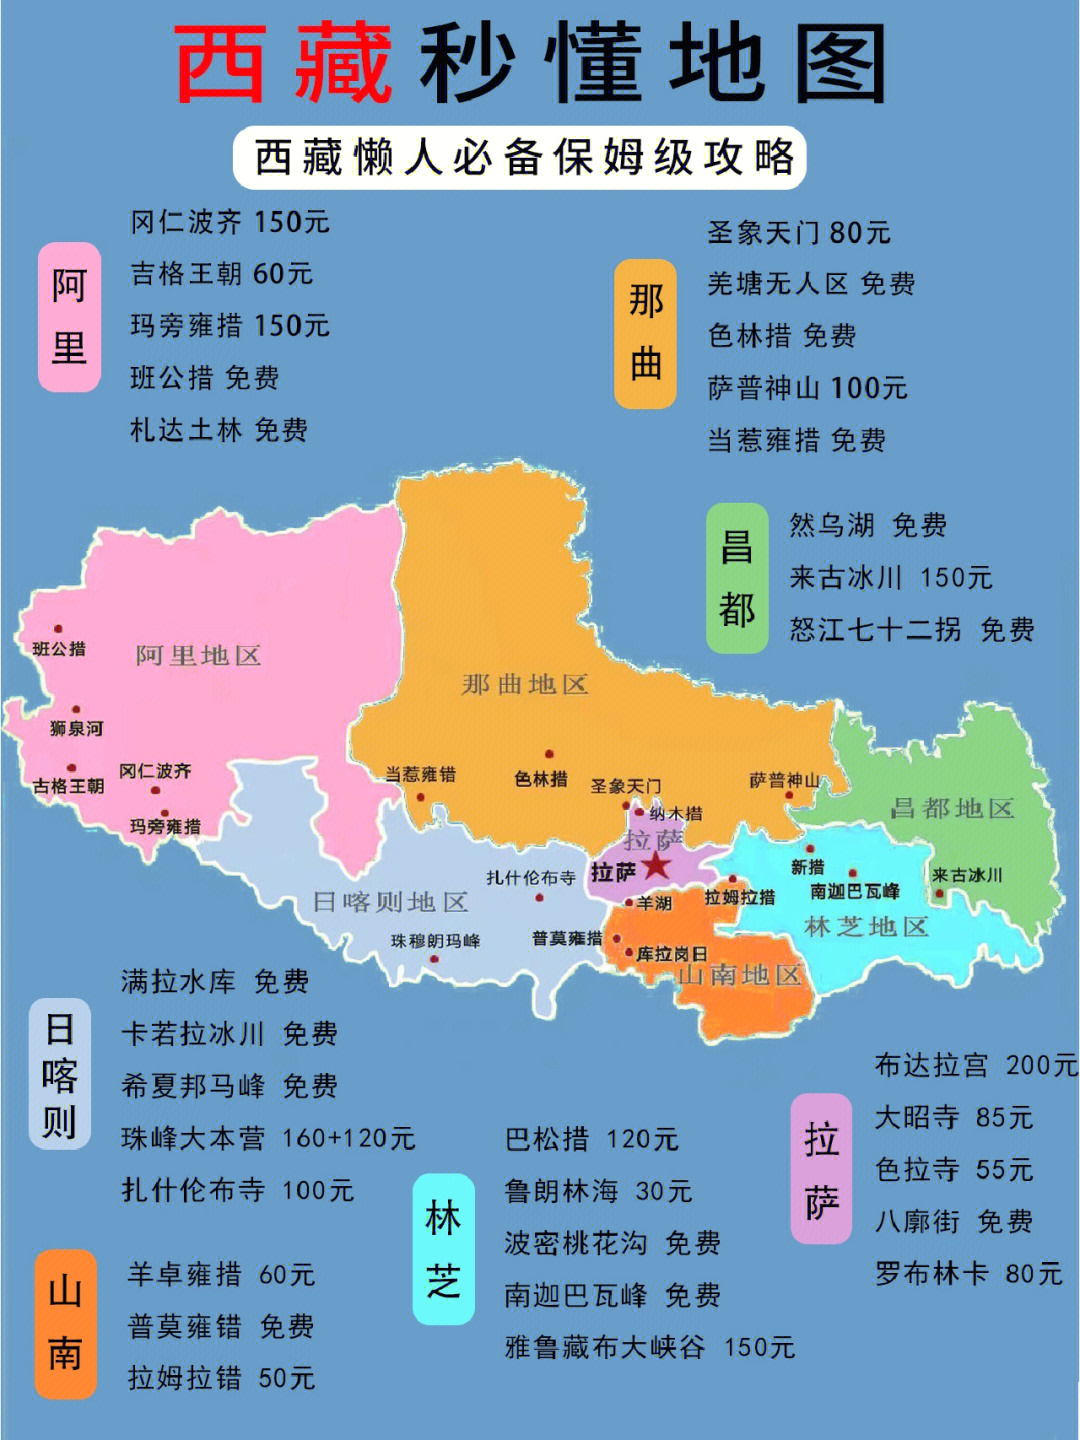 西藏旅游必备秒懂地图75第一次去西藏必收藏